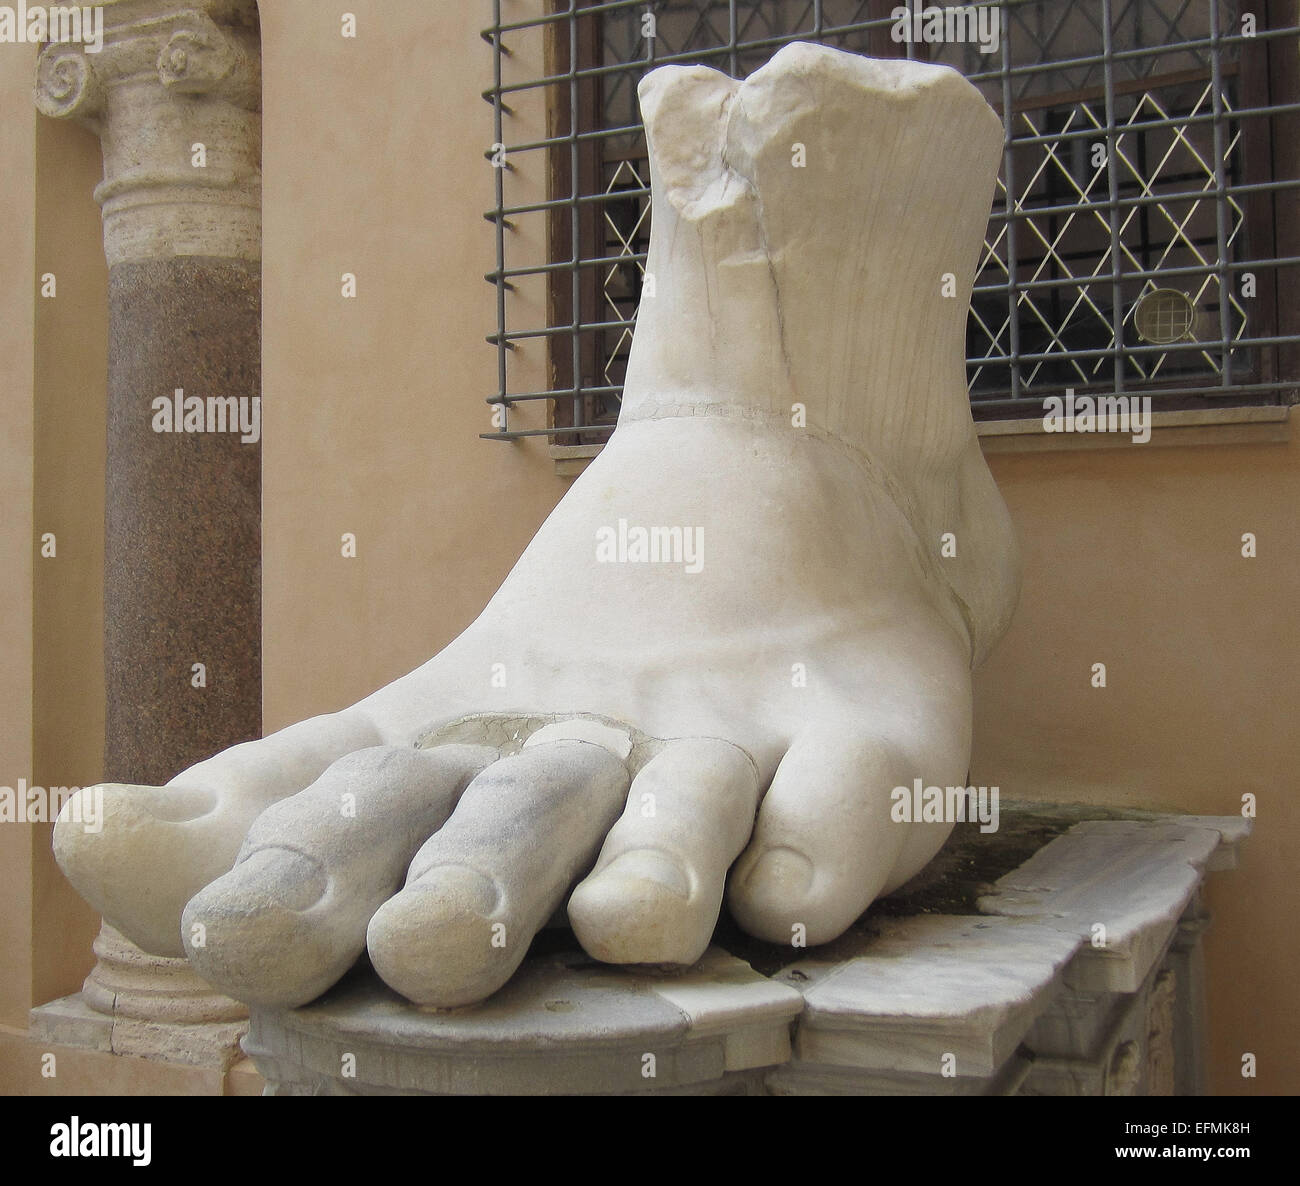 Diese riesigen Fuß war Bestandteil der Koloss von Konstantin, eine riesige Statue des Roman Emperor Constantine, die einst in der Basilika des Maxentius, in der Nähe des Forum Romanum in Rom. Der Fuß ist aus Marmor gehauen. Die Statue nach dem großen Sieg Konstantins über Maxentius in der Schlacht an der Milvischen Brücke in 312 n. Chr. datiert. In der Spätantike wurde die Statue für seine Teile geplündert. Dieser Fuß, Hände und Kopf sind jetzt im Kapitolinischen Museum Rom untergebracht. Das Foto stammt bis März 2014. Stockfoto